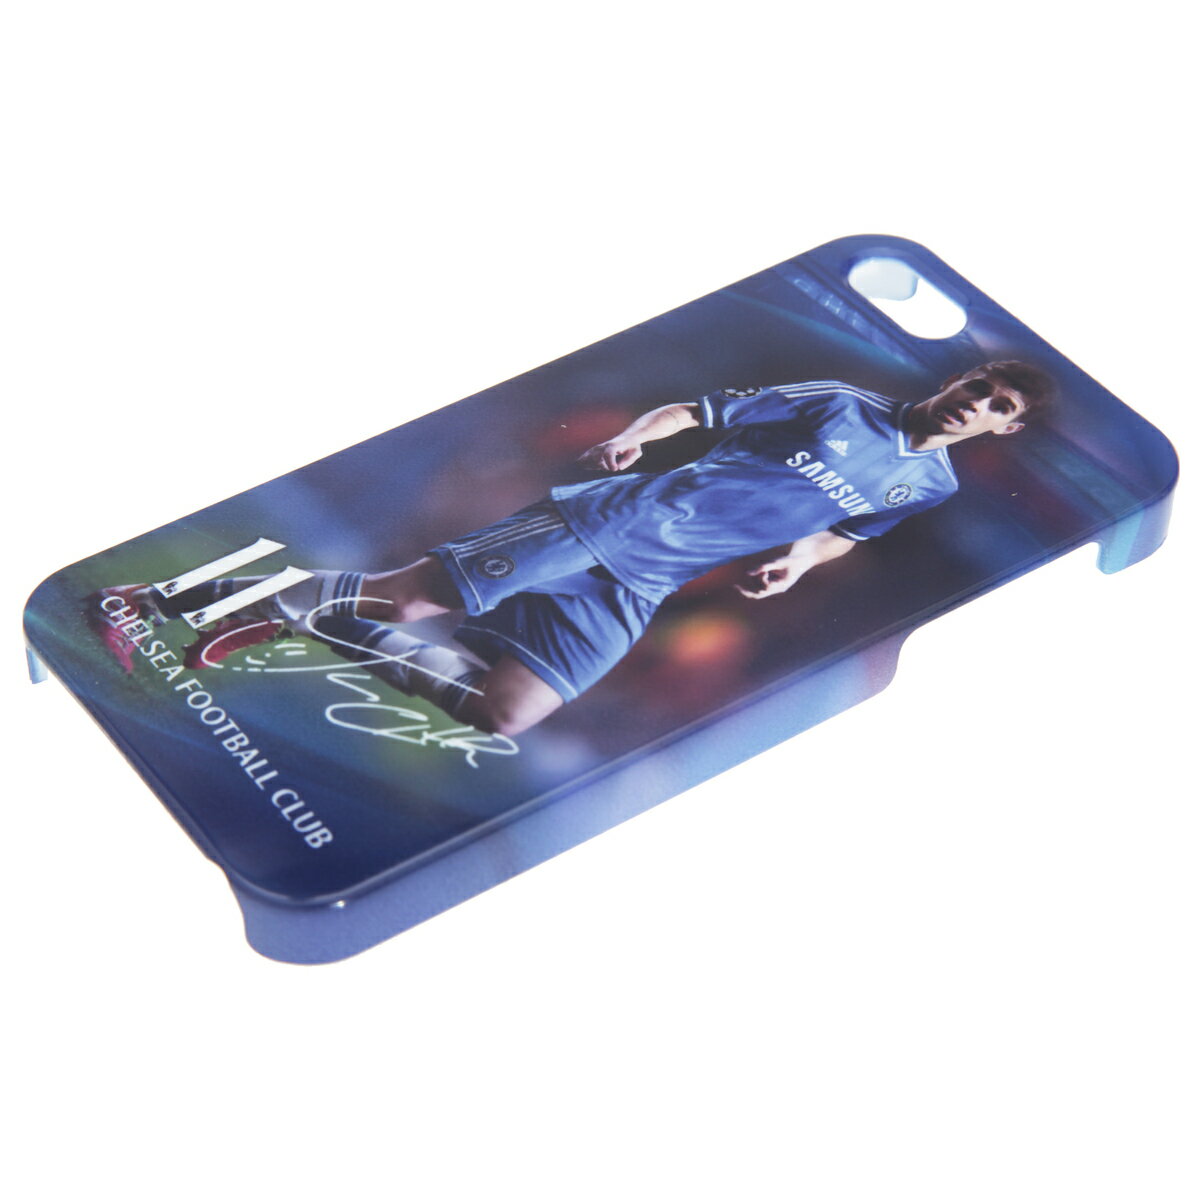 チェルシー フットボールクラブ Chelsea FC オフィシャル オスカー選手デザイン iphoneハードケース スマートフォンカバー (iphone5/5S対応) 【海外通販】